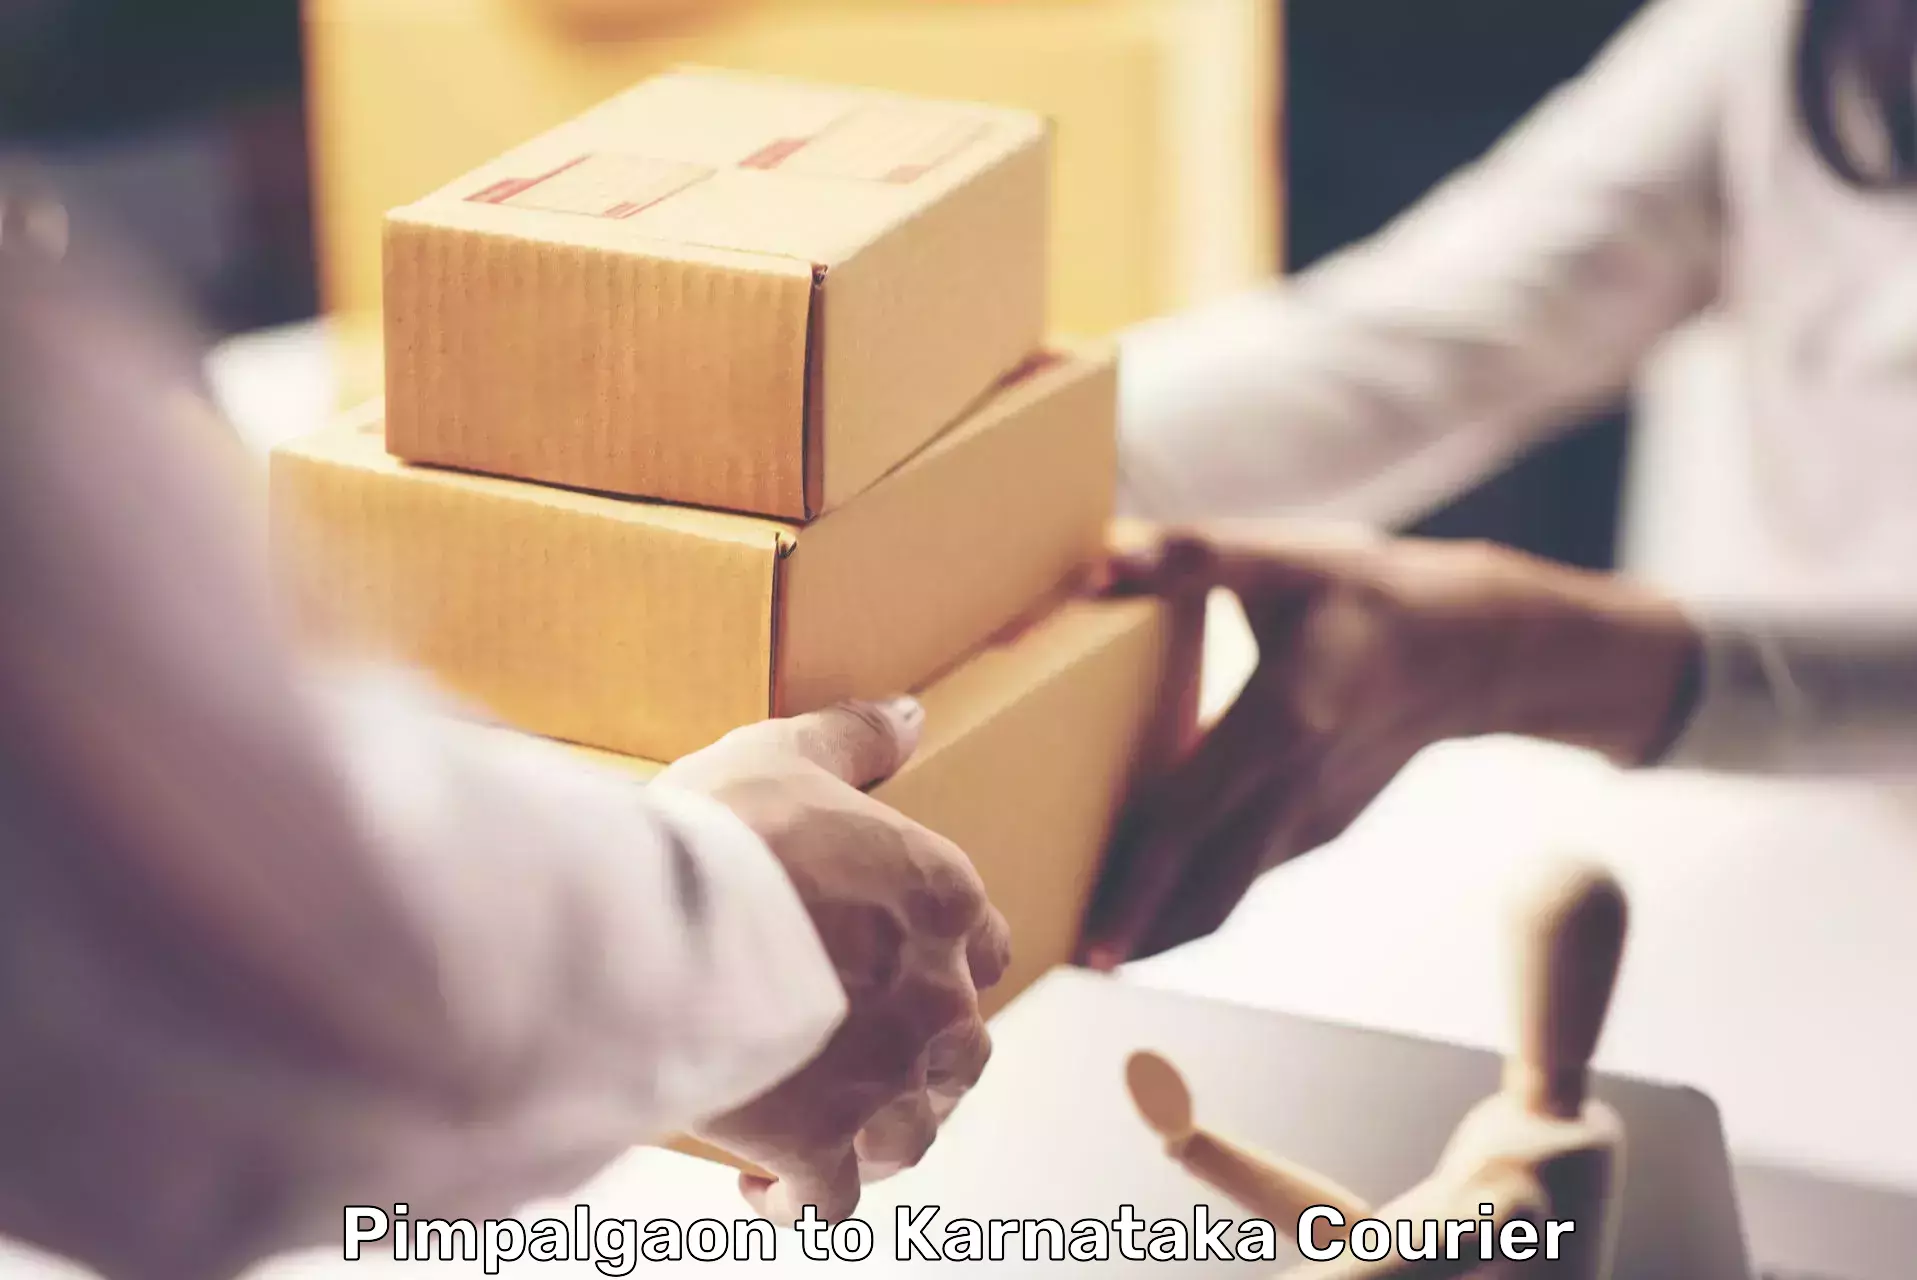 Next-generation courier services Pimpalgaon to Bethamangala